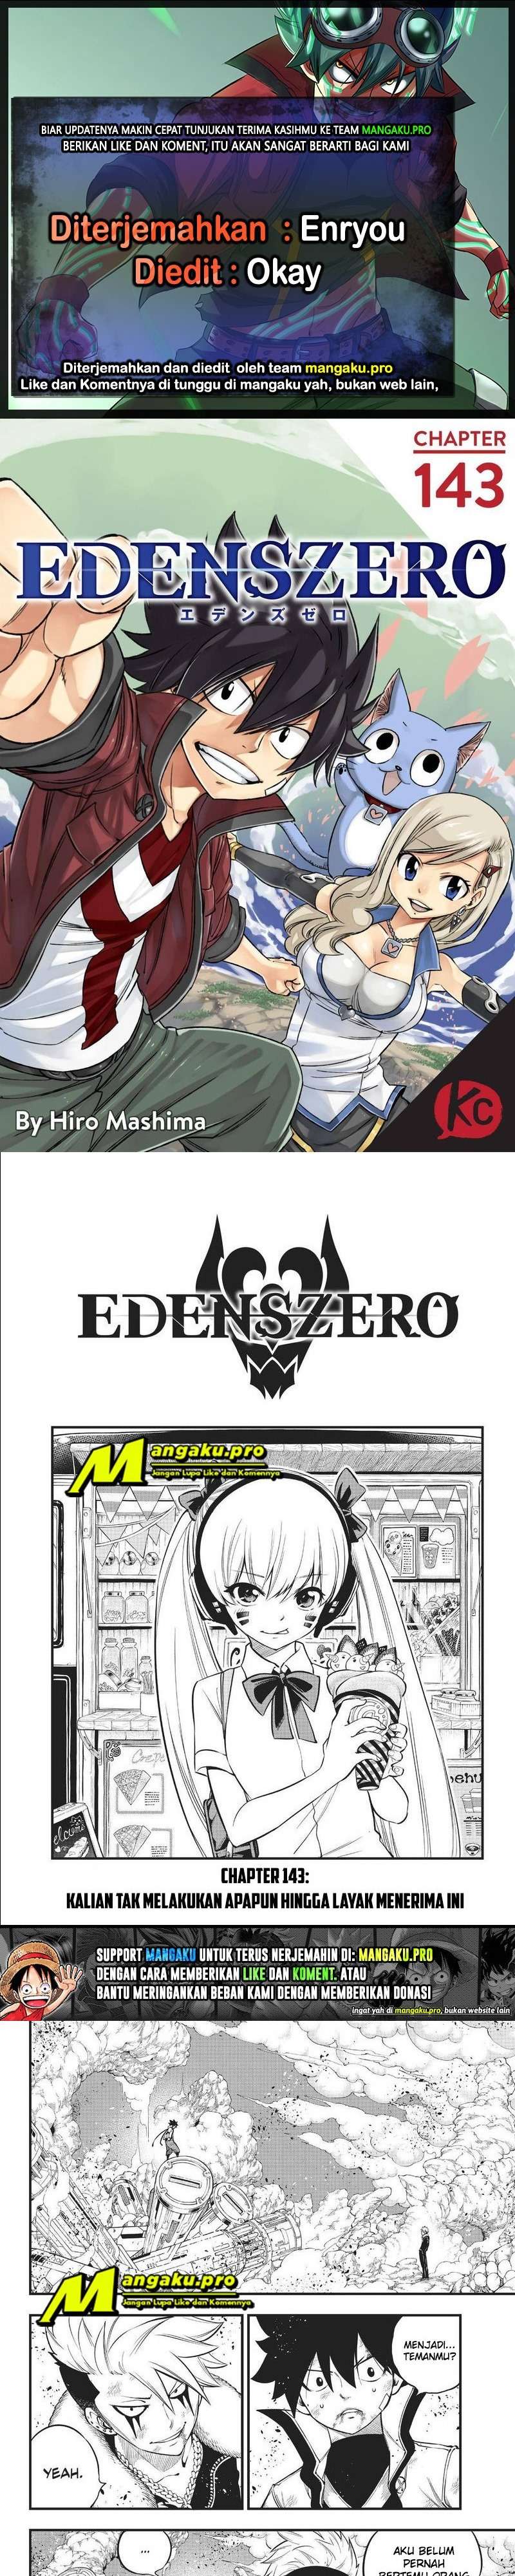 Eden’s Zero Chapter 143